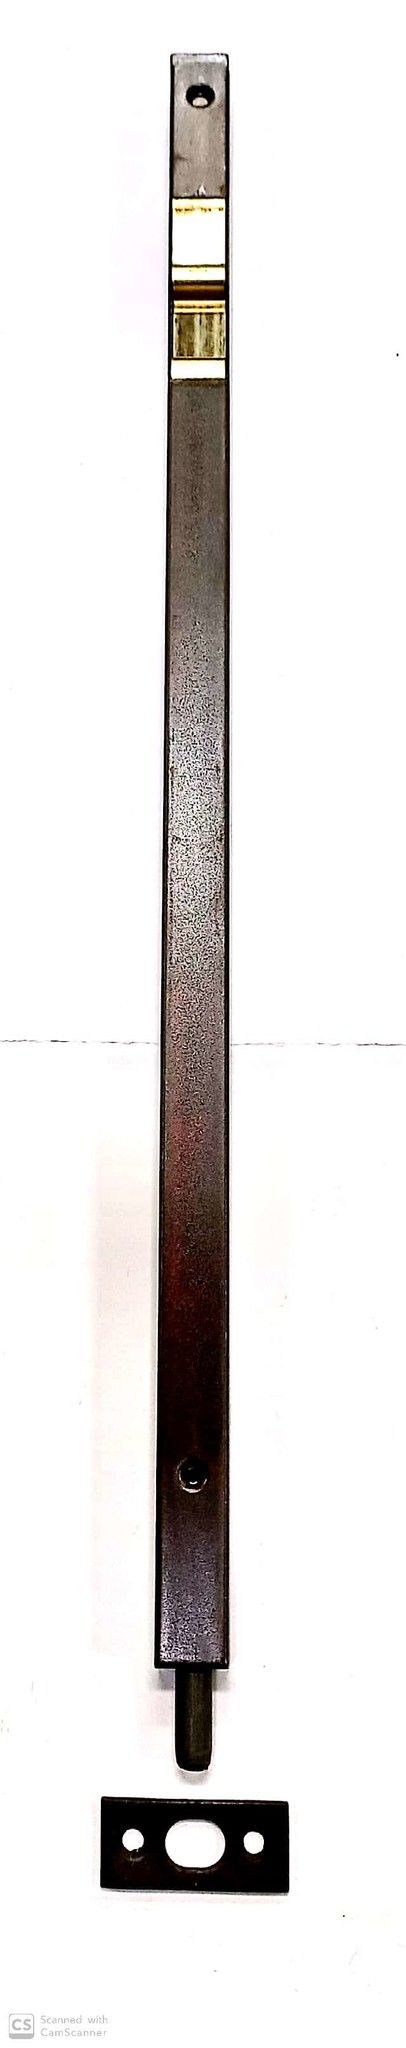 Catenaccio a pulsante cm 40 in ferro bronzato AGB 310